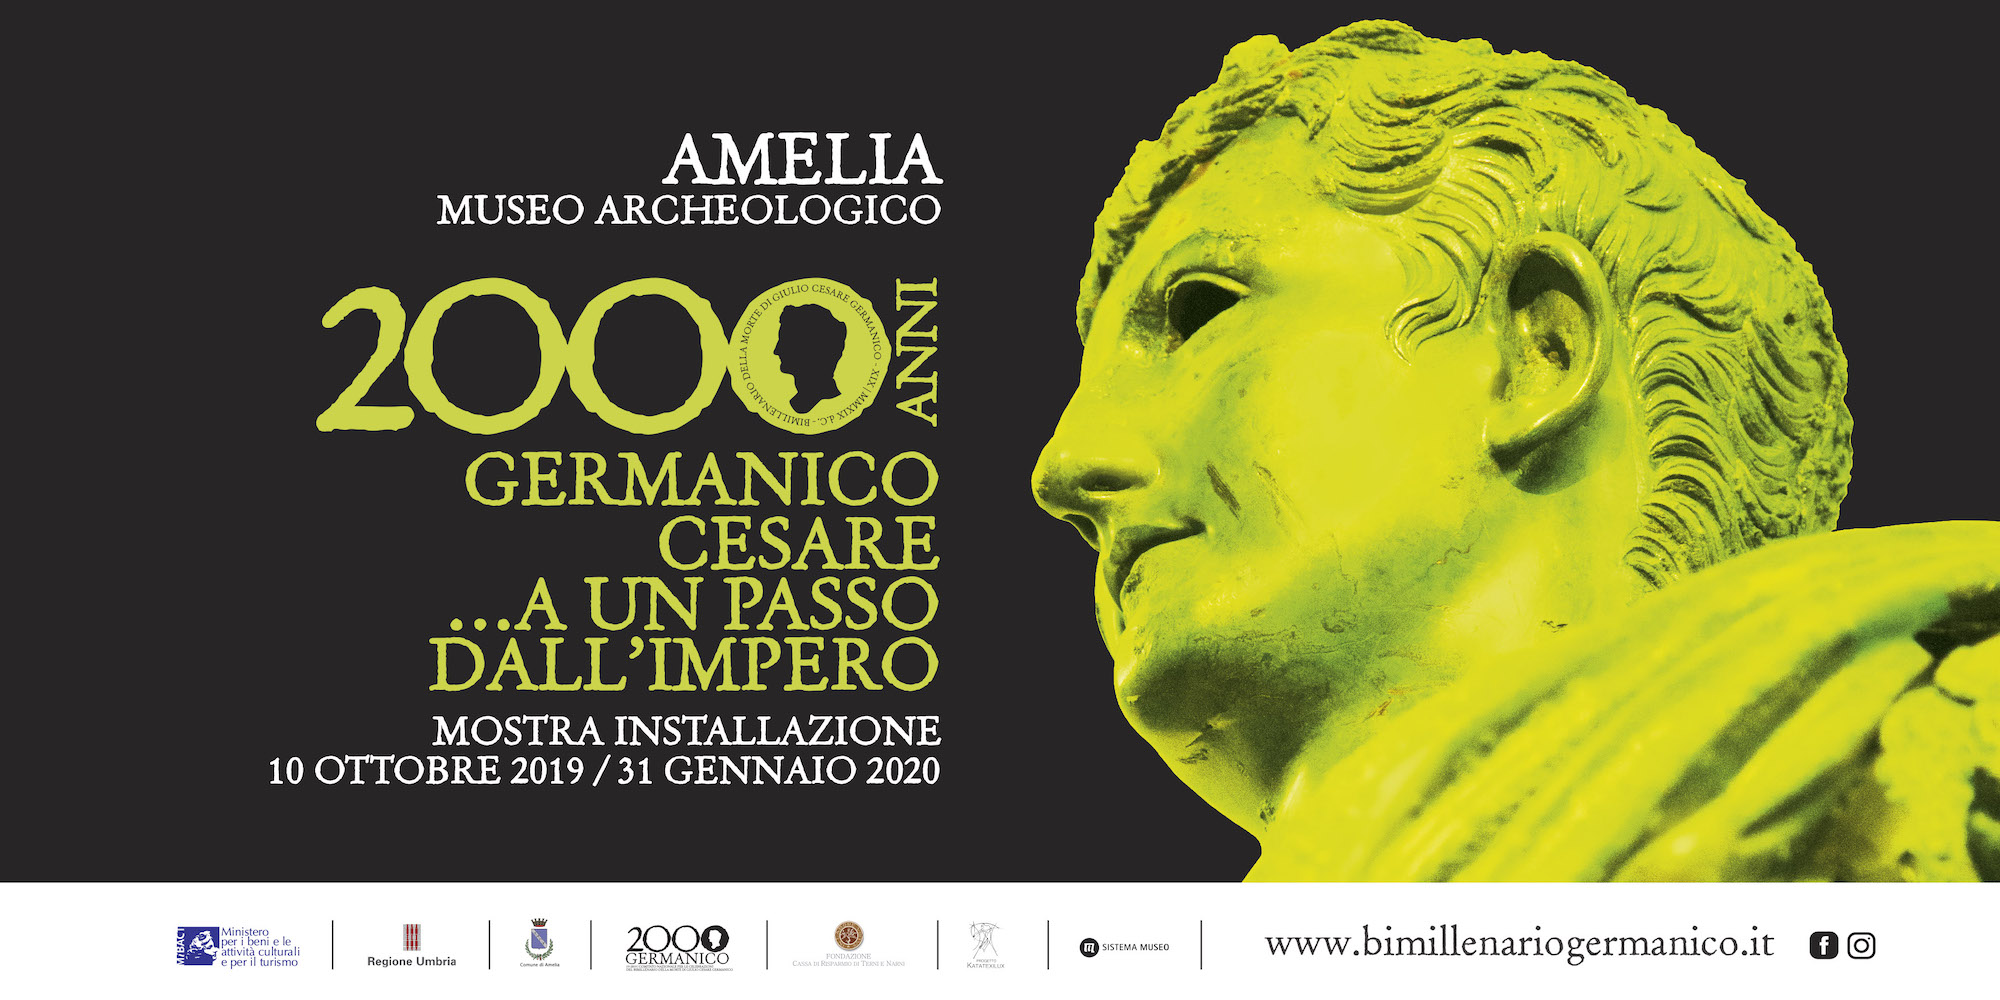 Mostra Installazione “Germanico Cesare… A un passo dall’impero.” Amelia 10 Ottobre – 31 Gennaio 2020